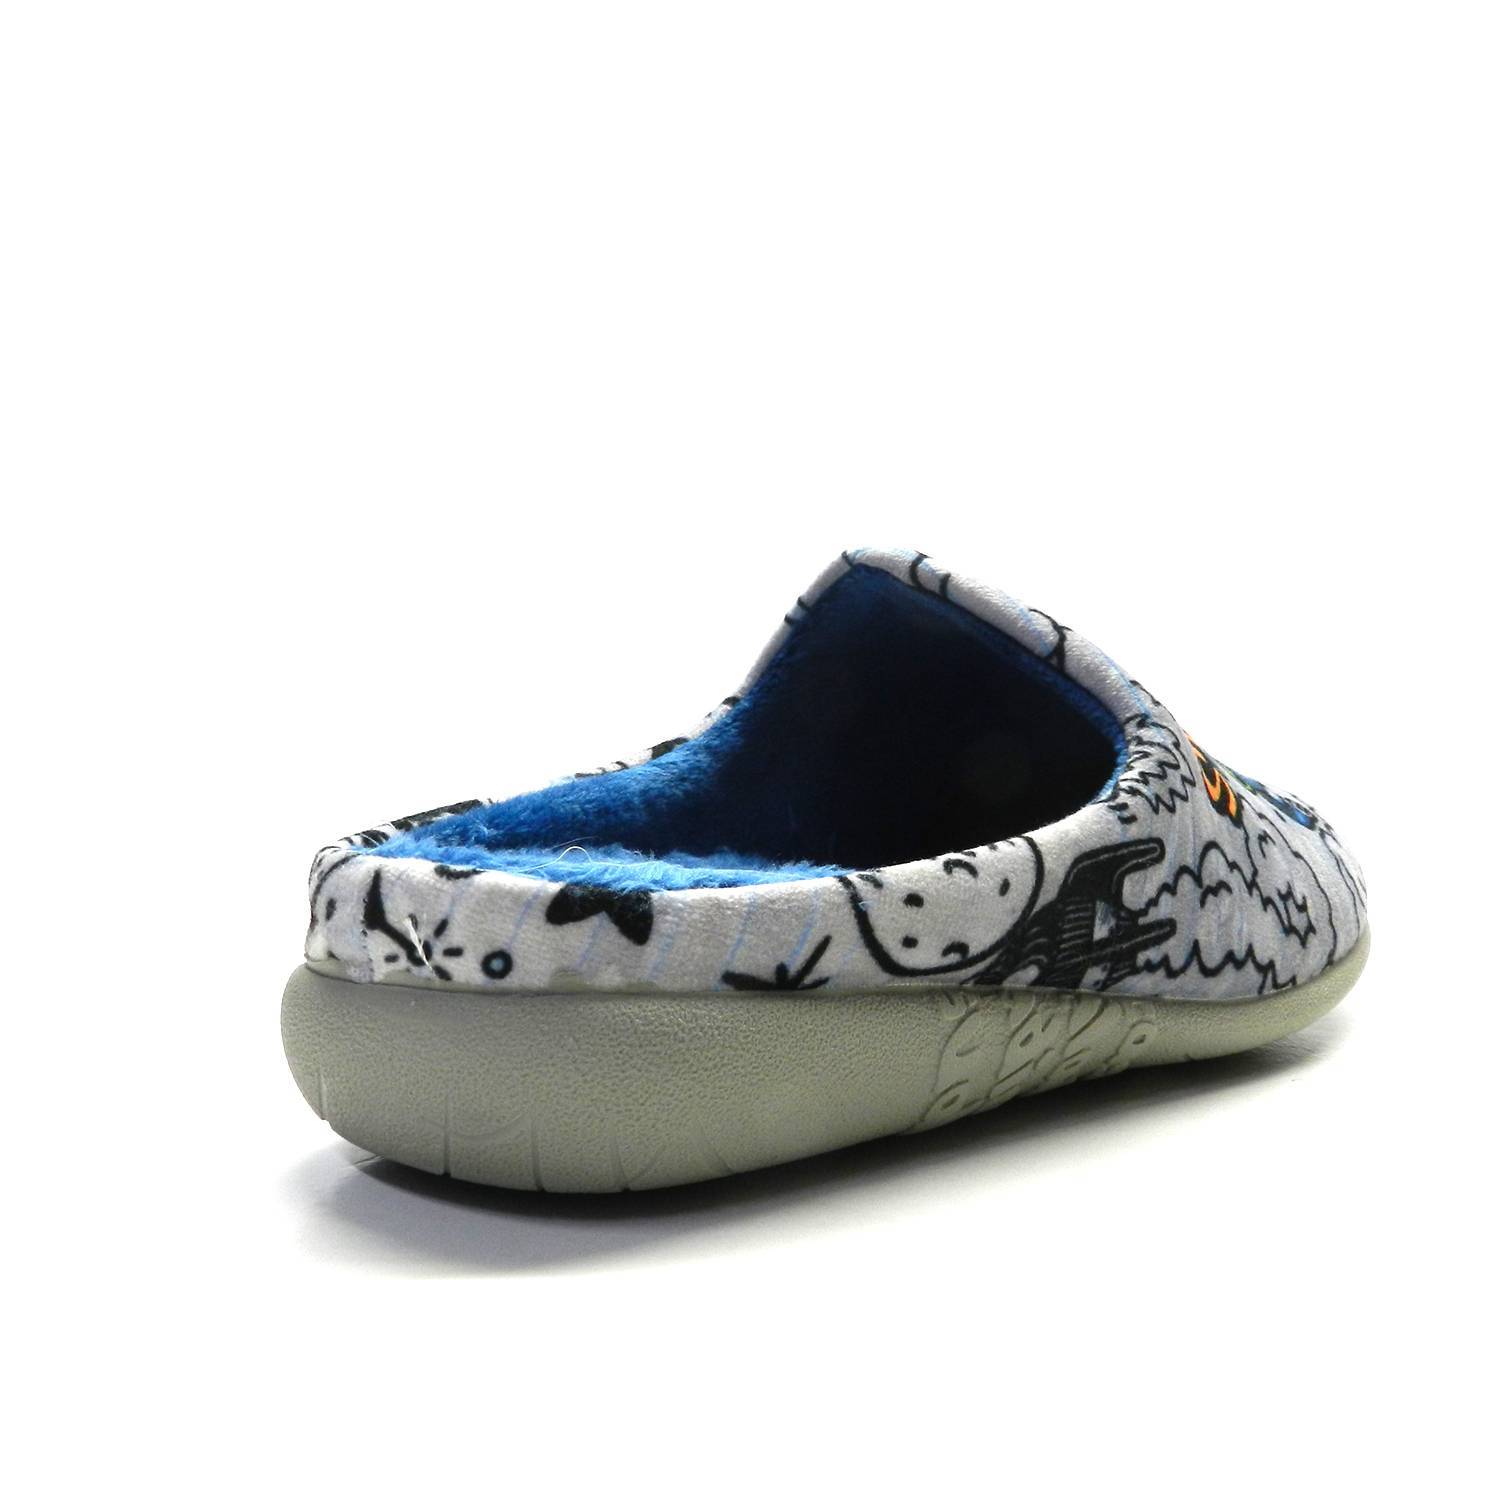 Zapatillas de casa de la marca Vulladi, modelo 8824 en estampado. Zapatillas infantil tipo zueco elaboradas en suave tejido invernal estampado en temática espacial. Interior cálido en color azul. Suela plana de caucho natural.